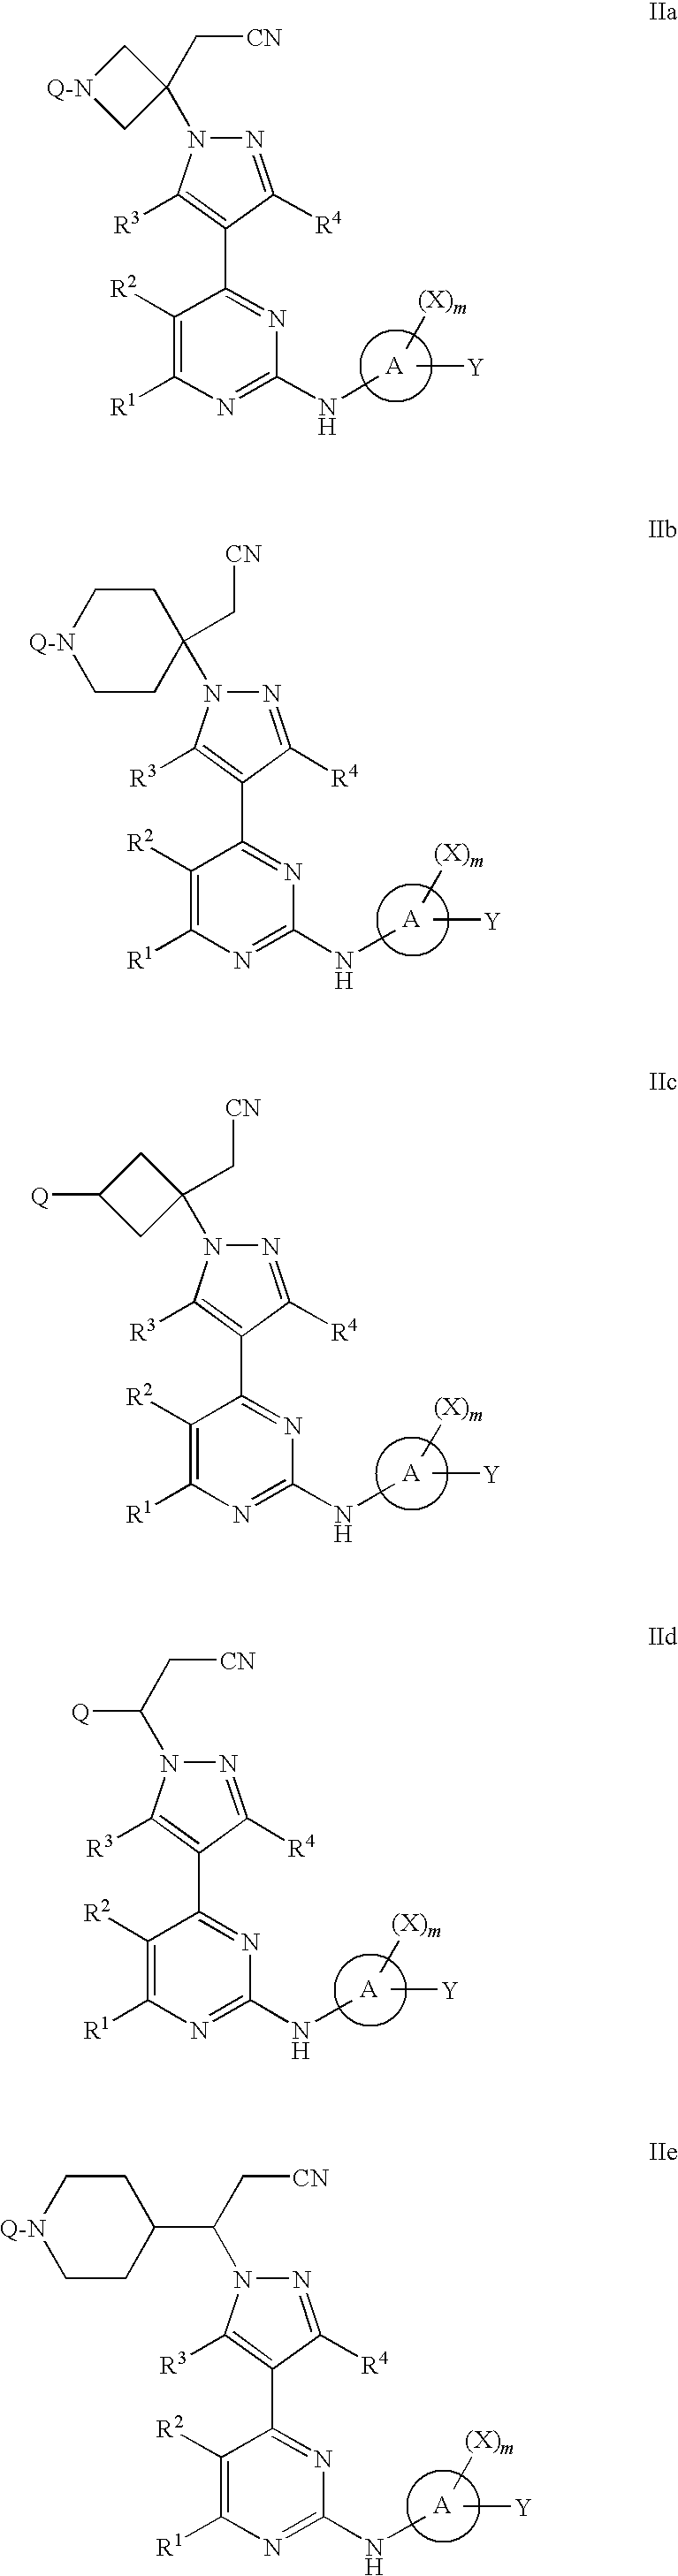 4-pyrazolyl-N-arylpyrimidin-2-amines and 4-pyrazolyl-N-heteroarylpyrimidin-2-amines as janus kinase inhibitors